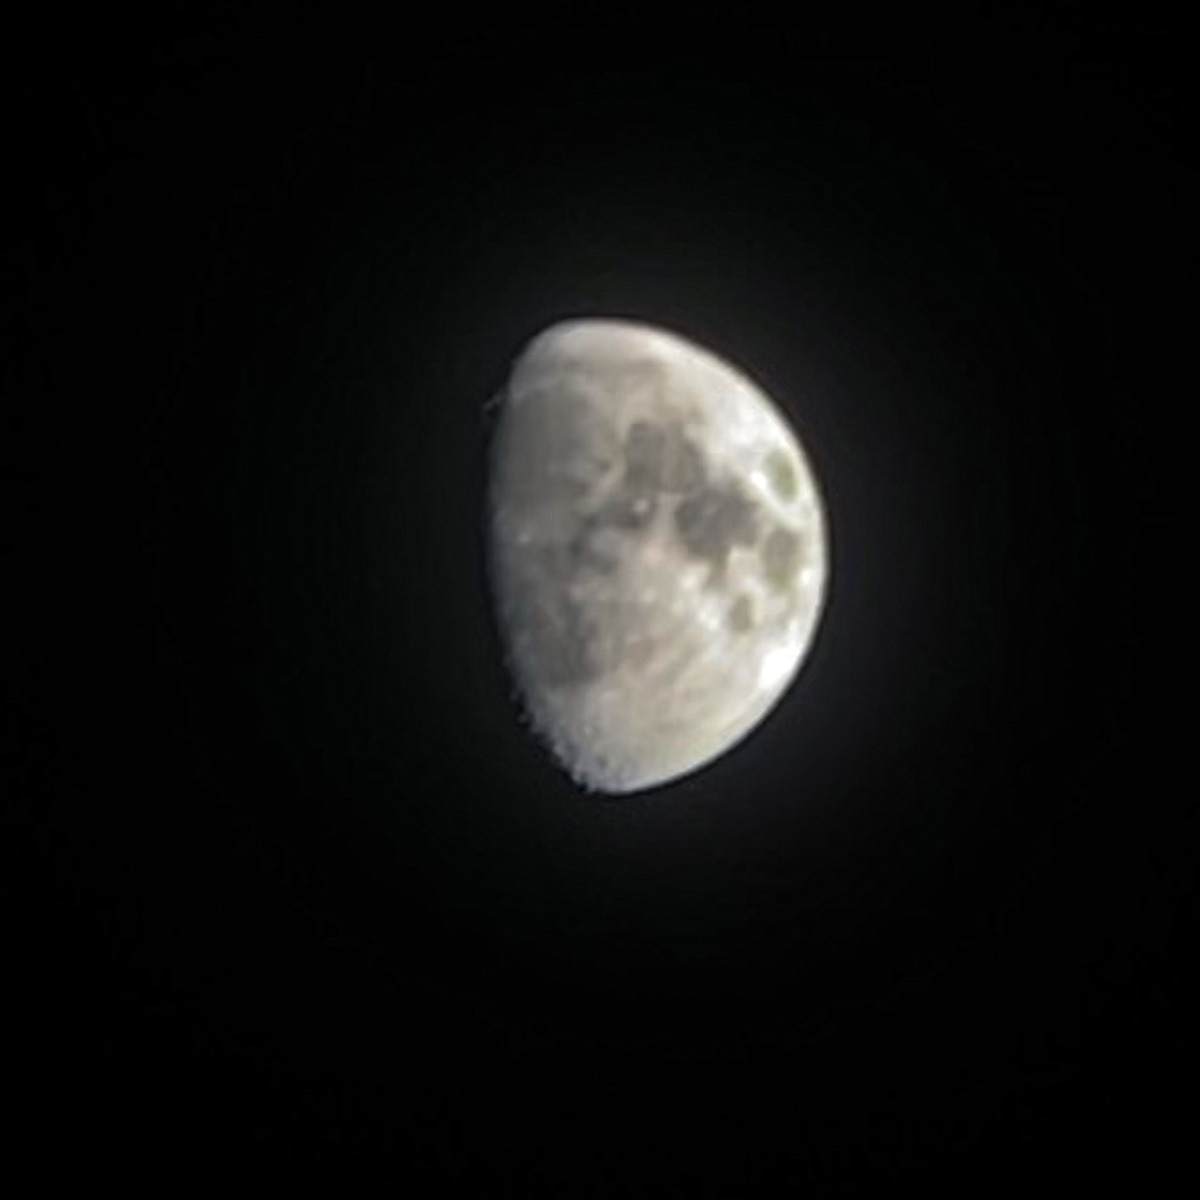 iPhoneで撮影した月